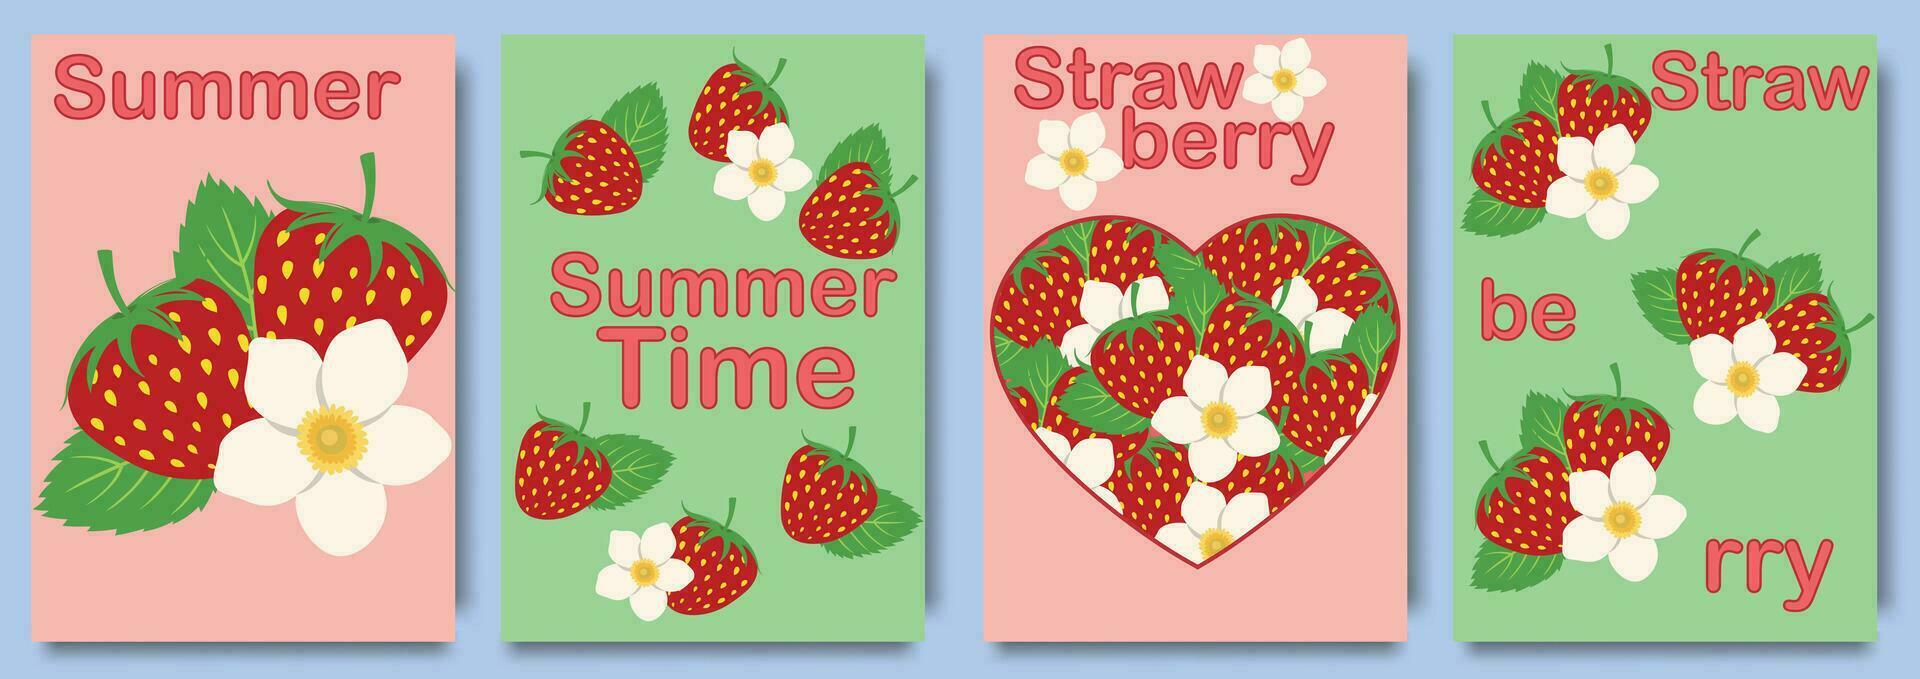 Créatif été concept avec fraise. moderne art conception avec cœurs, des fraises, fleurs et moderne typographie. modèles pour fête, les publicités, l'image de marque, bannière, couverture, étiqueter, affiche vecteur